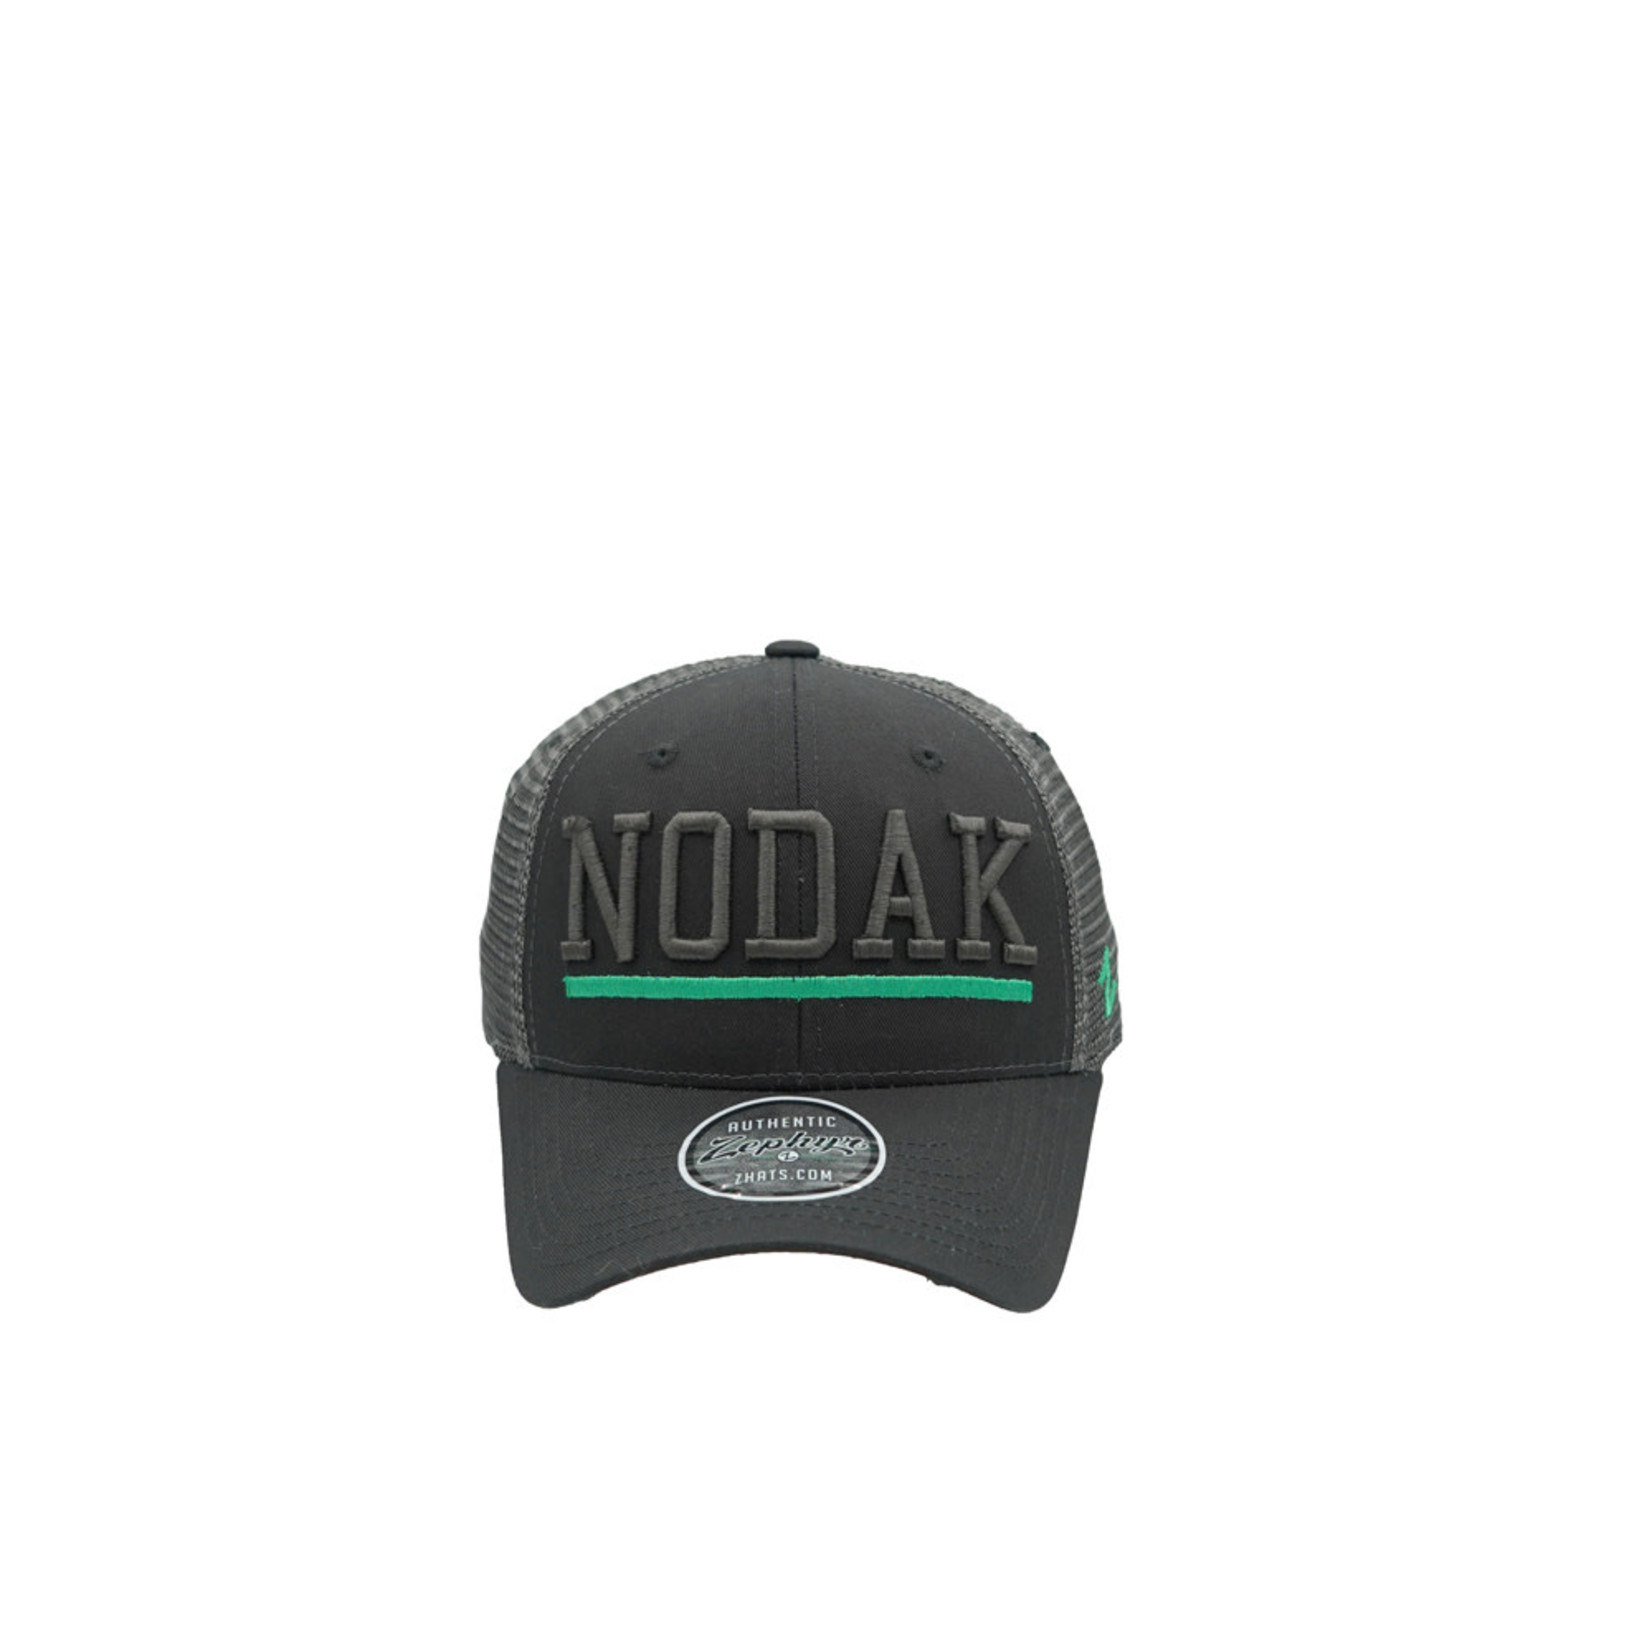 NODAK Upfront Hat